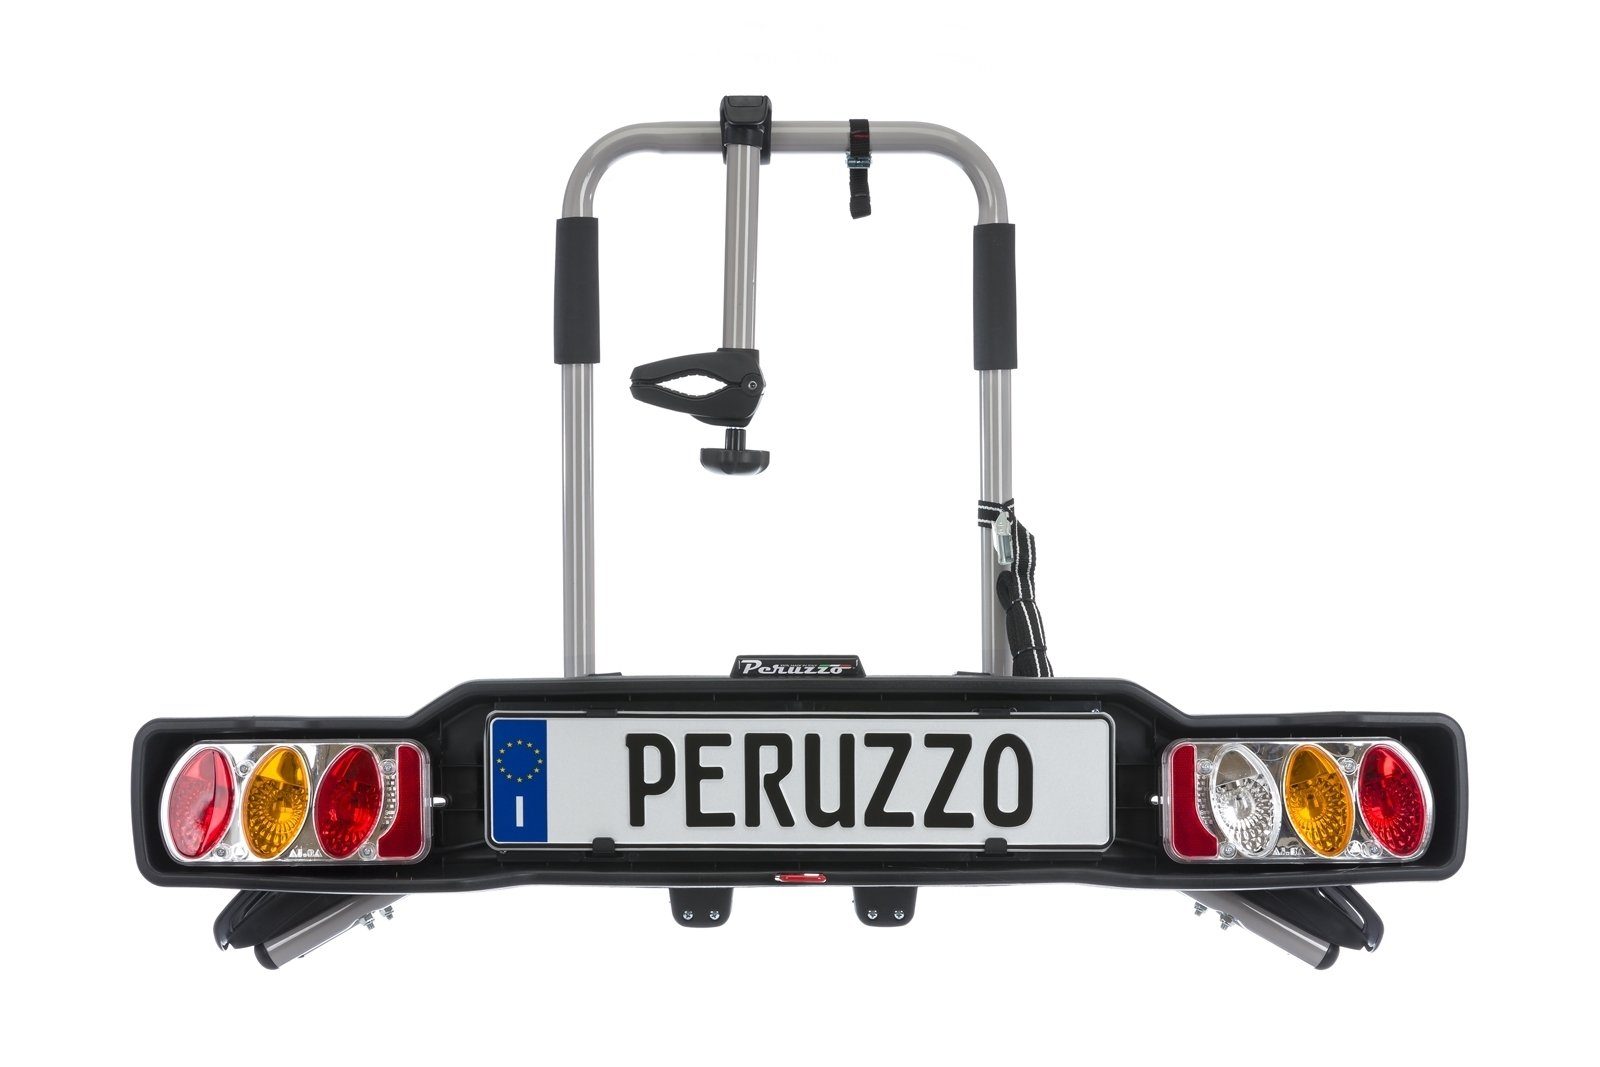 Stahl Kupplungsfahrradträger -15,58kg 2 Fahrräder Peruzzo -silber PERUZZO PARMA Fahrradträger